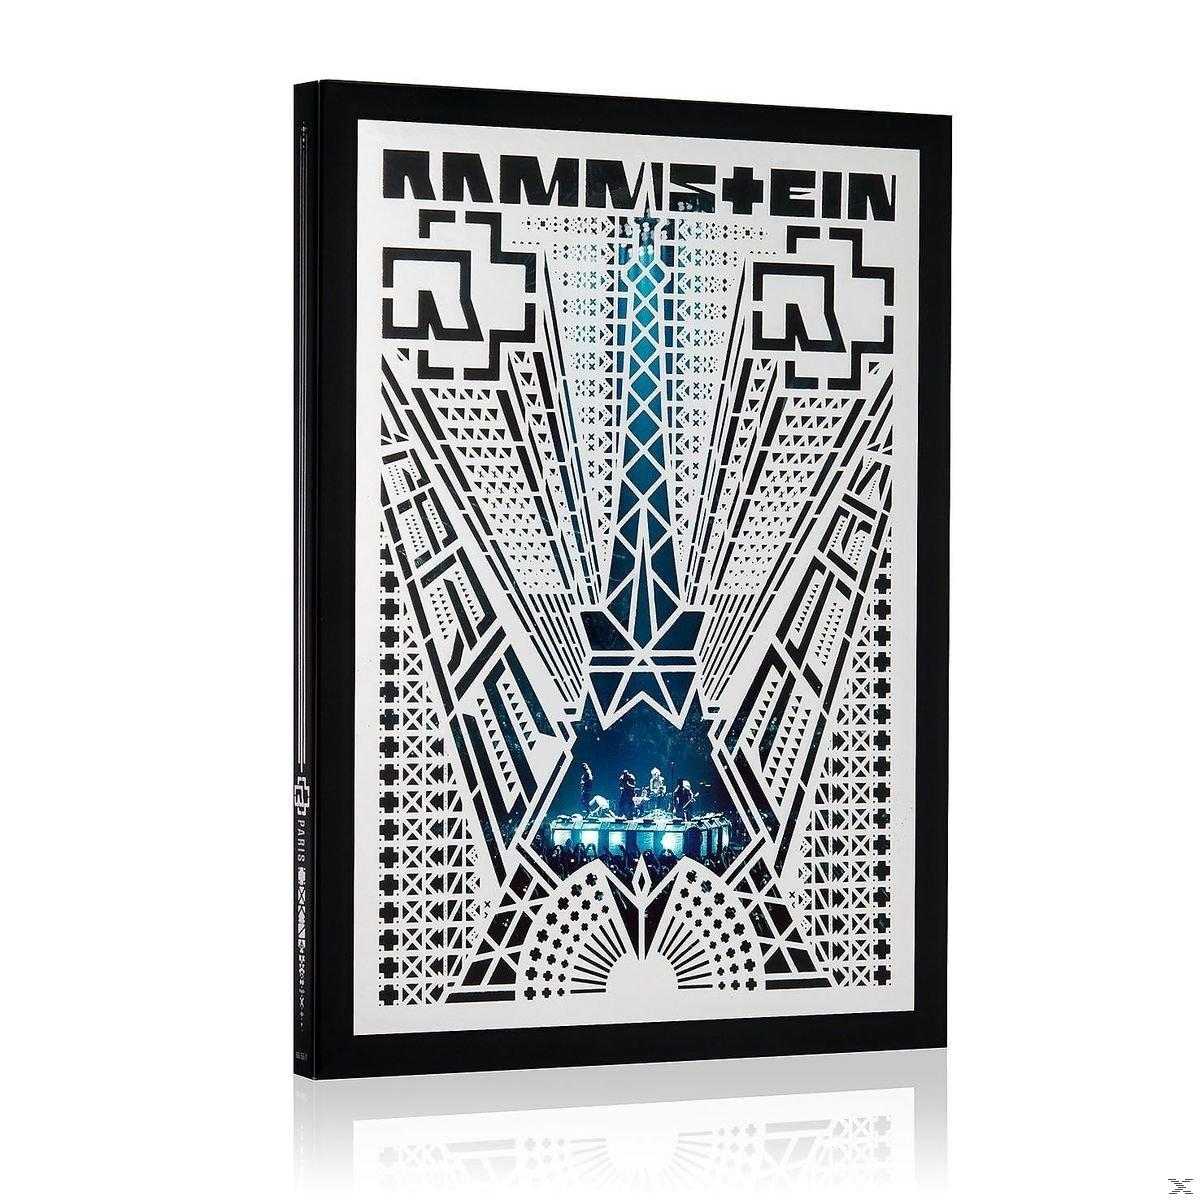 Rammstein - Rammstein: Paris (Standard (Blu-ray) Edt.) 